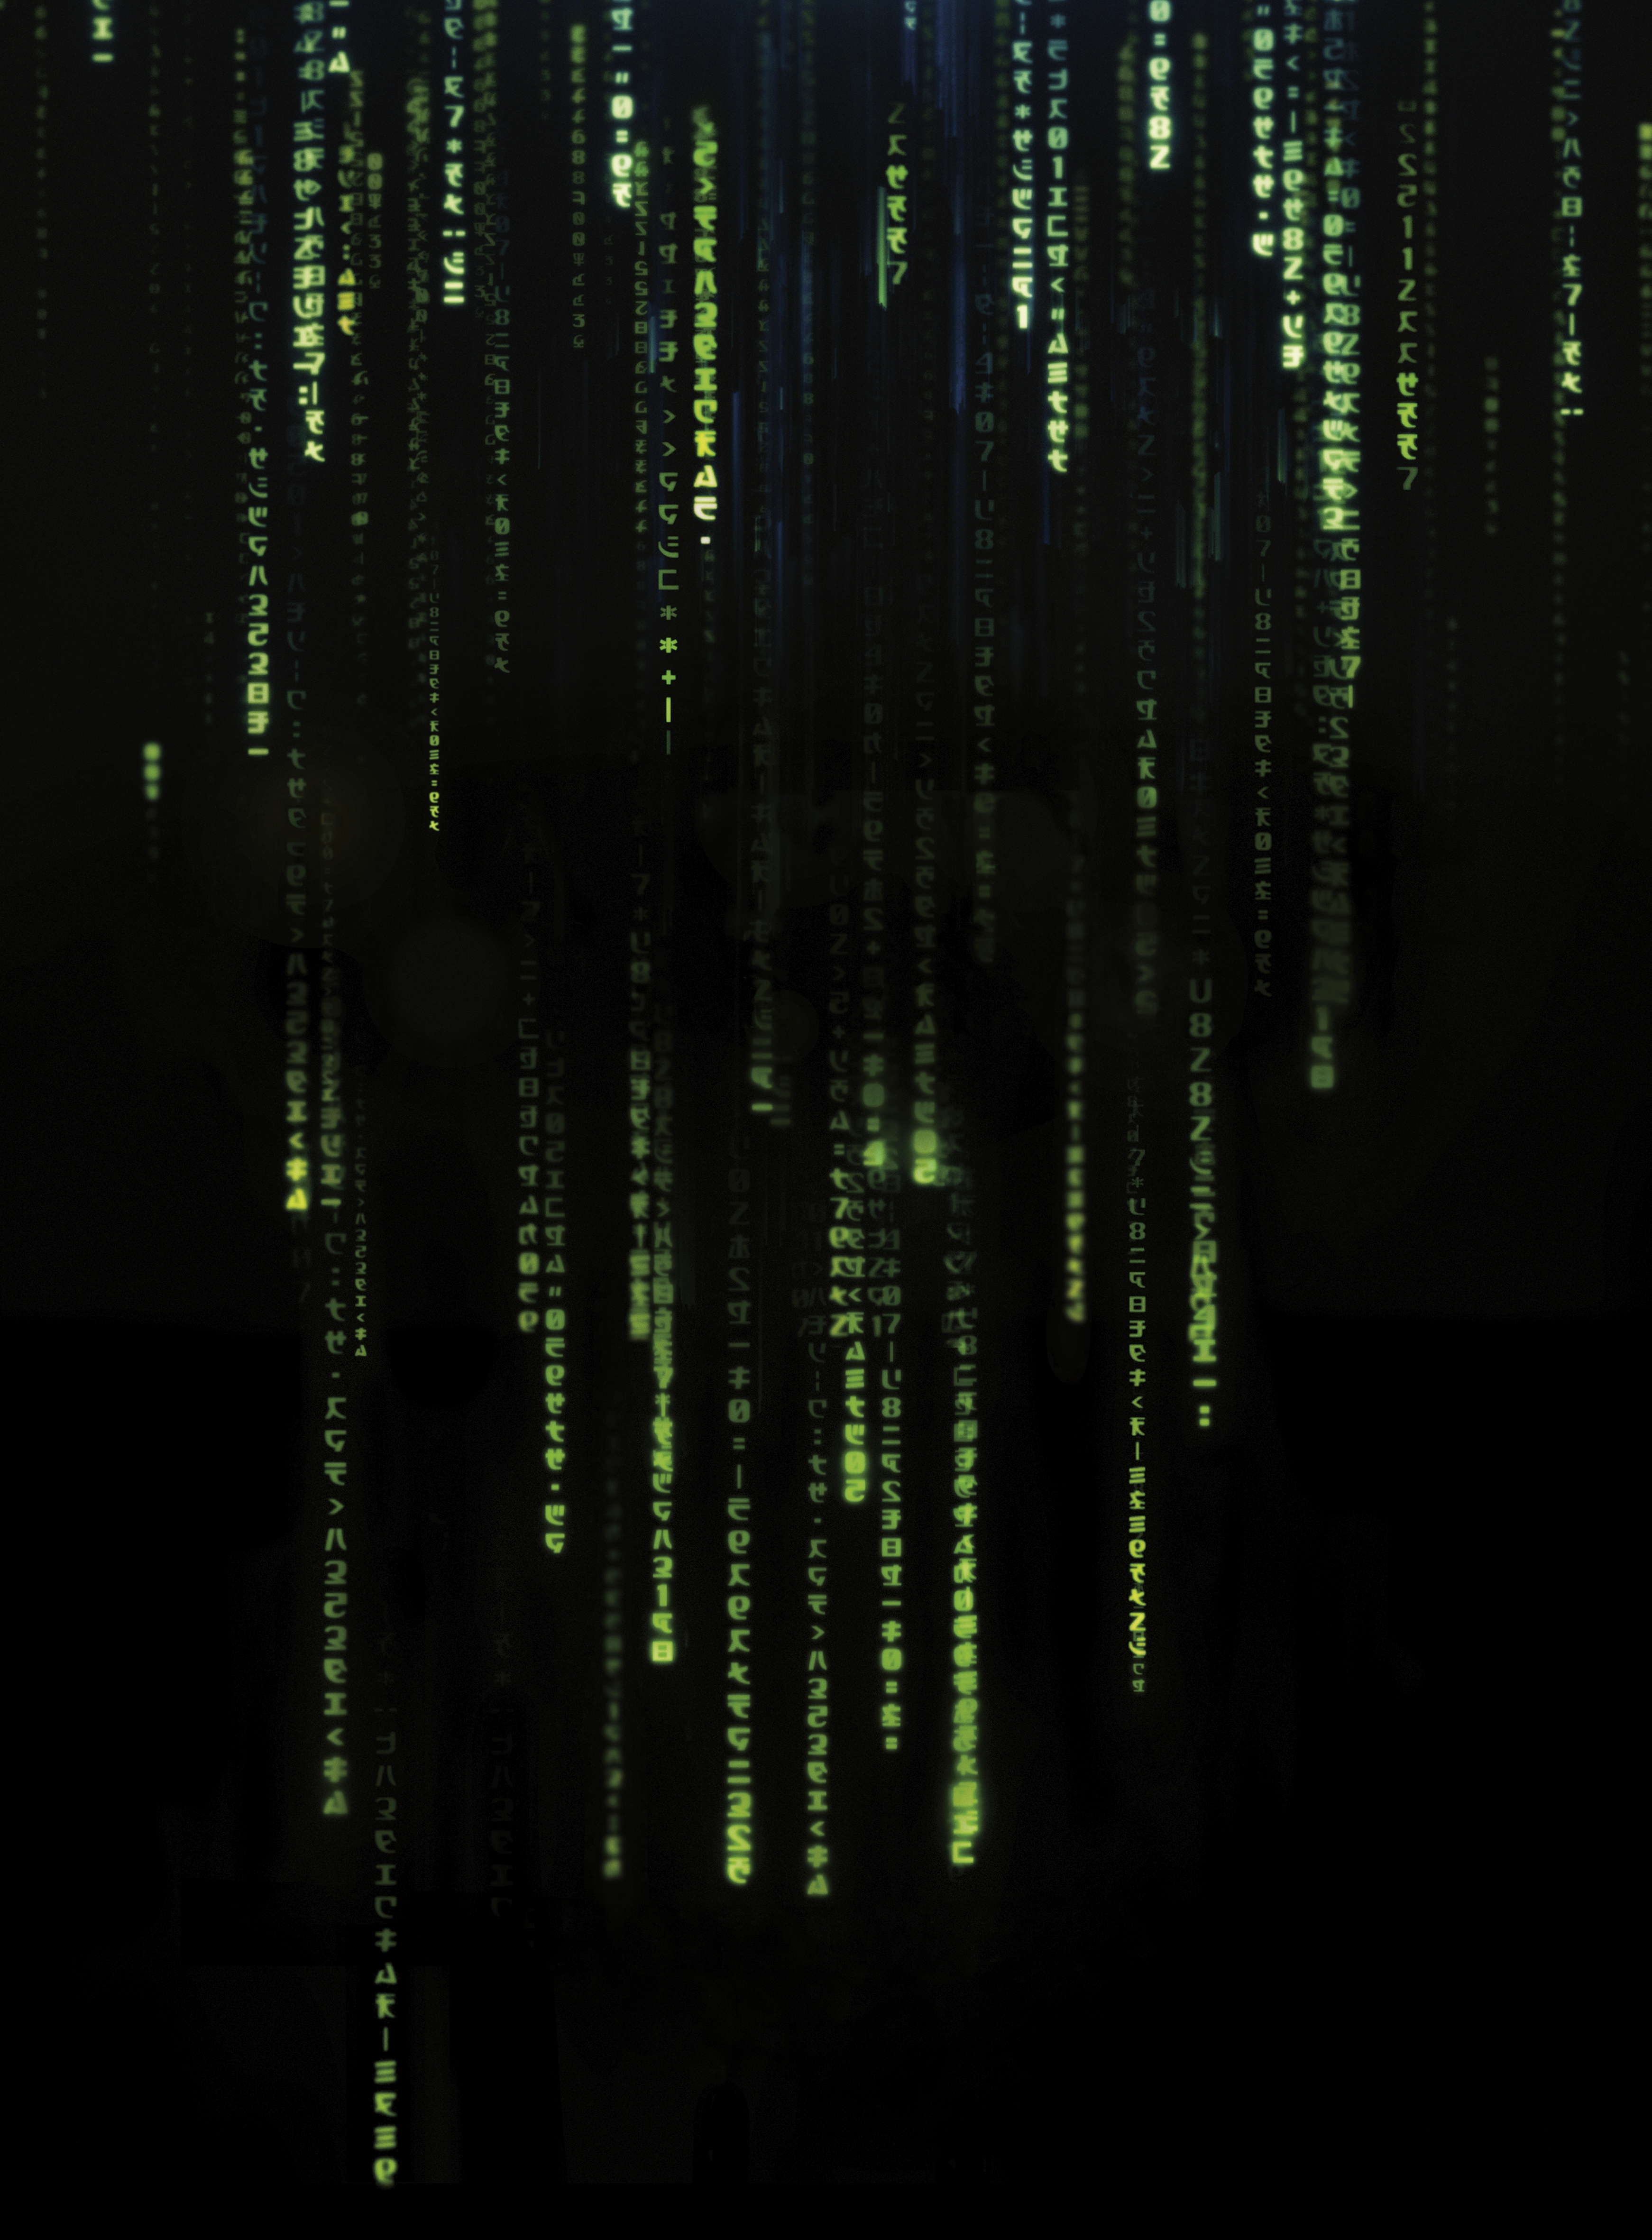 Matrix 4k Live Wallpaper - Download